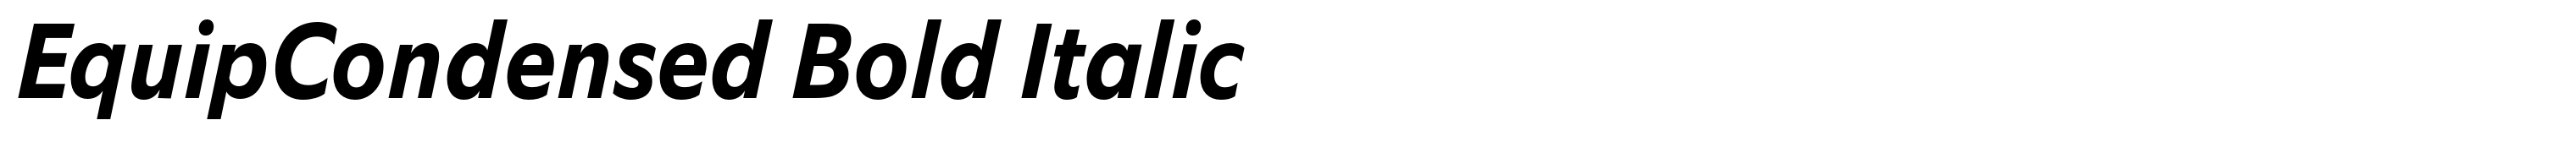 EquipCondensed Bold Italic